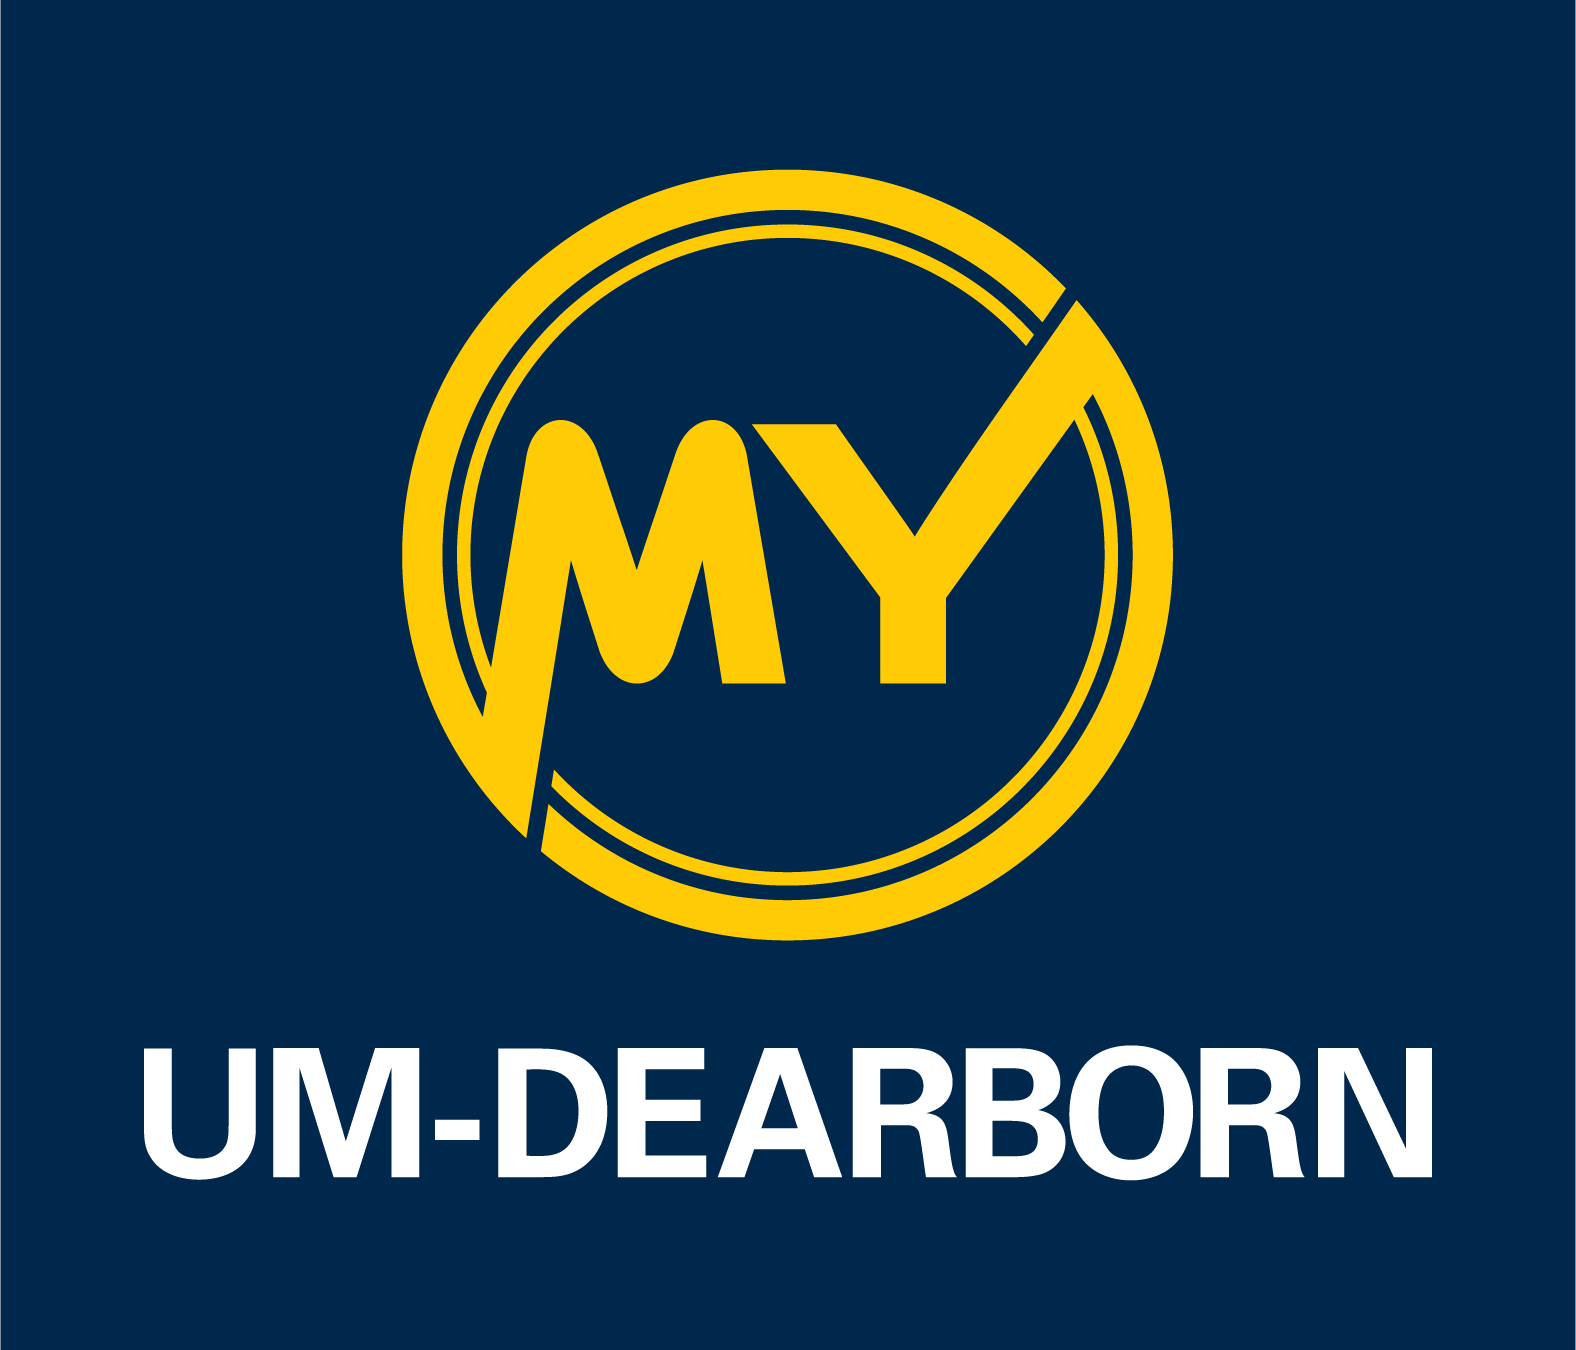 My UM-Dearborn logo